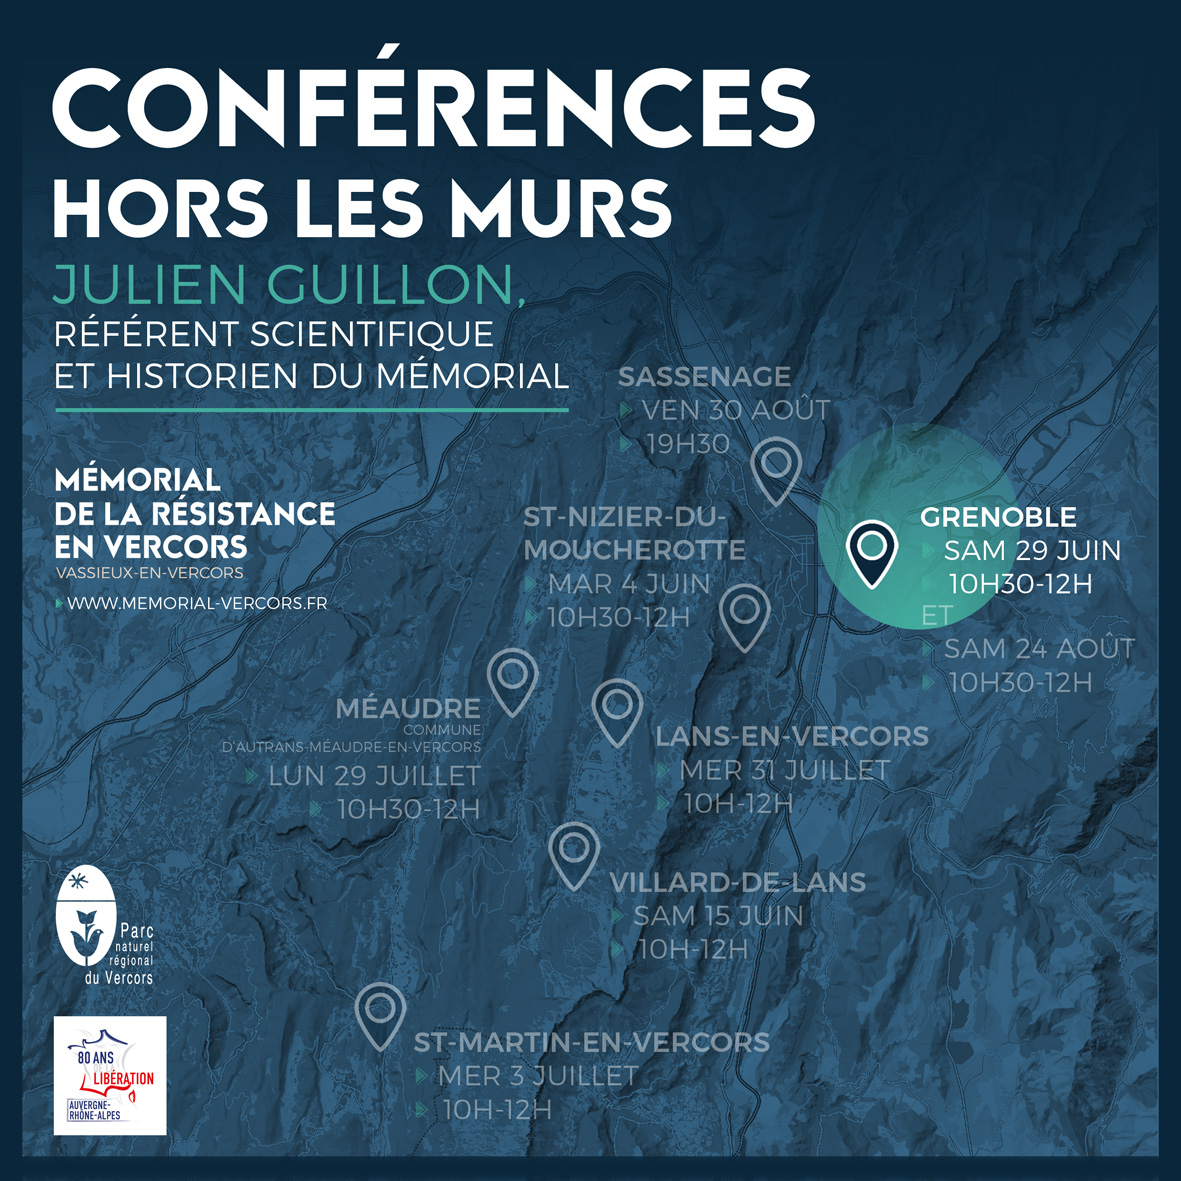 Conférence Hors les Murs à Grenoble